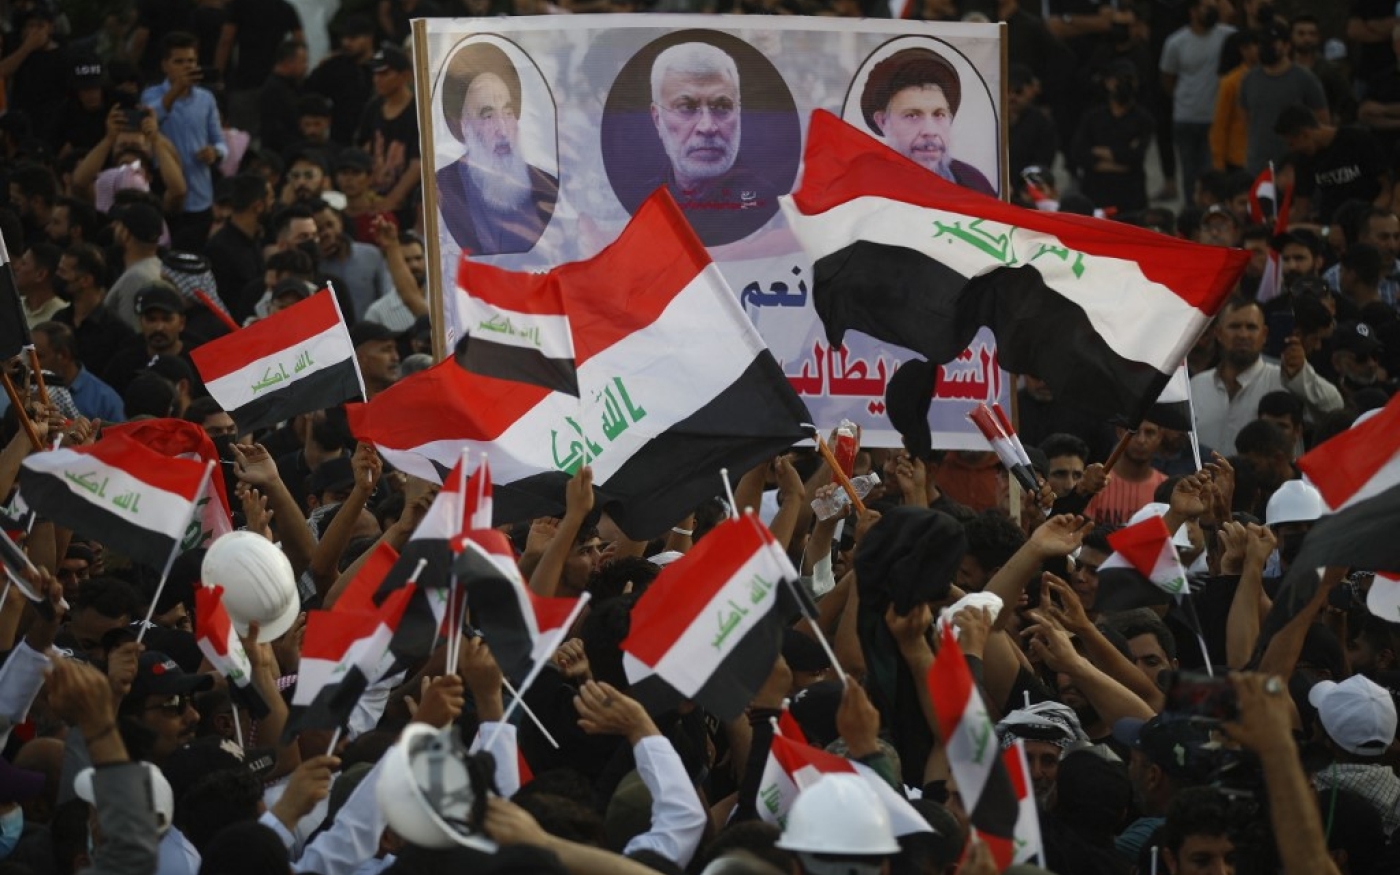 Les partisans du Cadre de coordination brandissent une pancarte représentant, de gauche à droite, le grand ayatollah Ali al-Sistani, l’ancien commandant irakien al-Muhandis, et le défunt clerc chiite irakien Mohammed Baqer al-Sadr, lors d’un rassemblement à l’extérieur de la la Zone verte à Bagdad, le 12 août 2022 (Ahmad Al-rubaye / AFP)